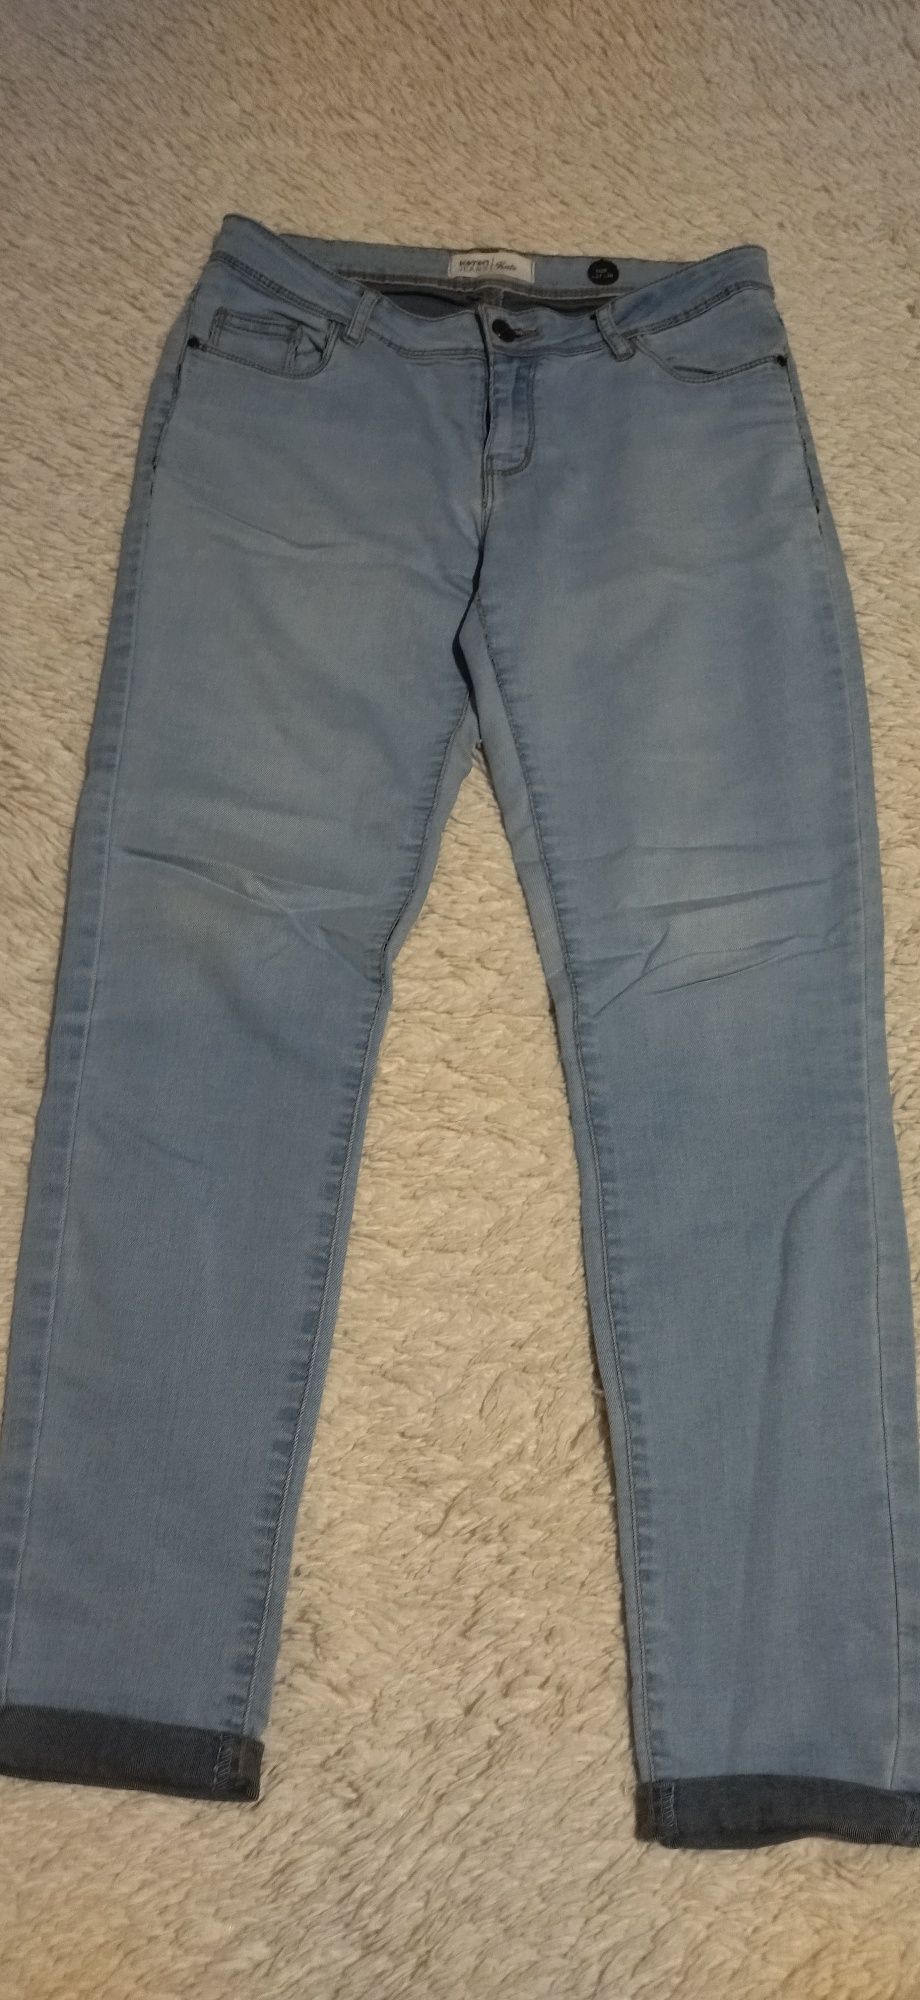 Продам джинсы, размер на 42-44